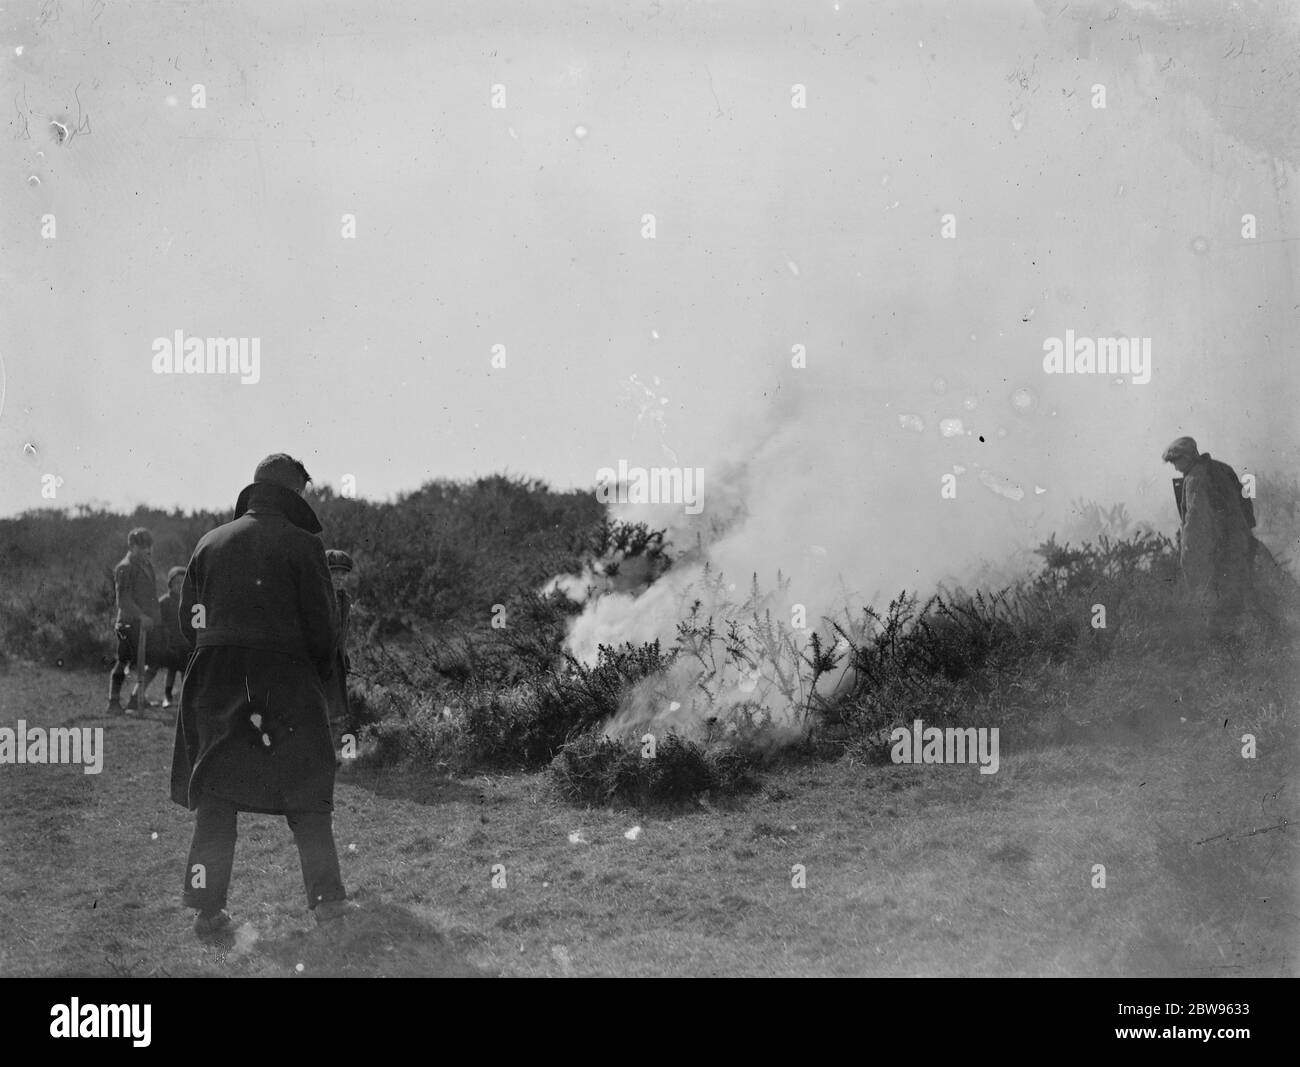 Große gemeinsame Feuer in der Nähe von Eastbourne . Ein großes gemeinsames Feuer lag Abfälle Hektar Heide in der Nähe von Birling Gap , die berühmte Sussex Schönheit Ort in der Nähe von Eastbourne . Kinder beobachten die brennende gemeinsame während des Feuers . 26 März 1932 Stockfoto